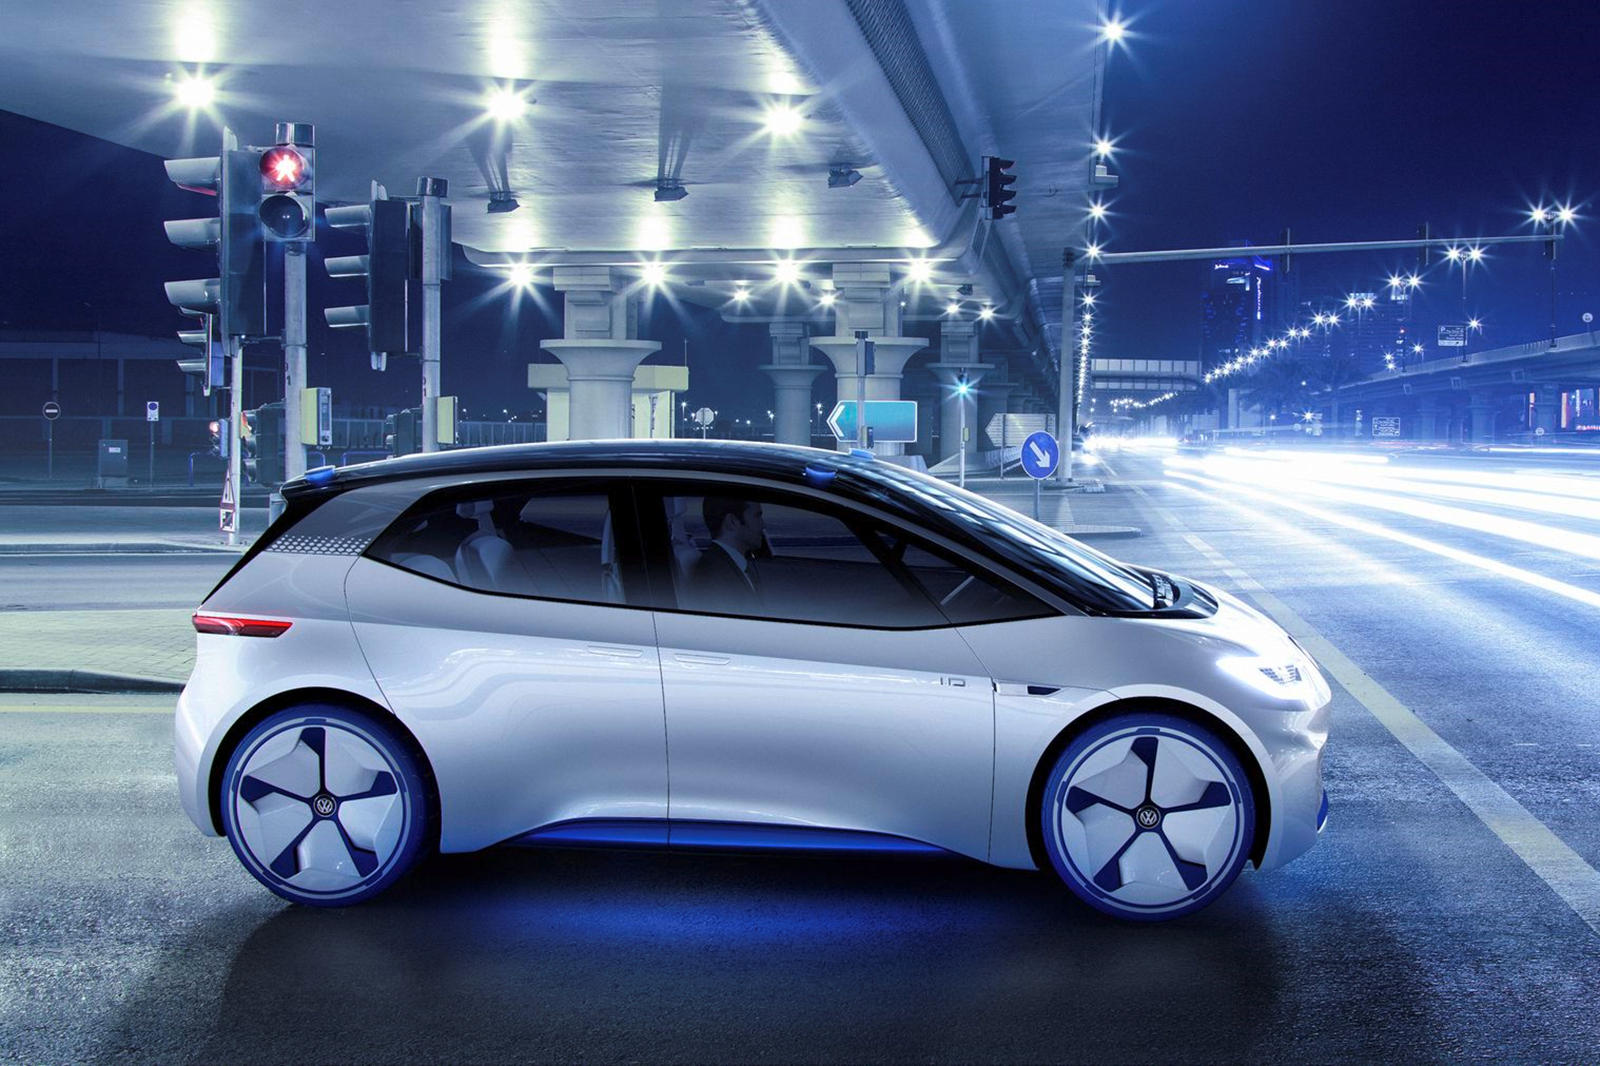 Новый североамериканский завод станет одним из 16 электрозаводов, которые VW намерен построить по всему миру к 2022 году в рамках колоссальной инвестиции в эту область размере 40 миллиардов долларов. Большинство из них будет в Китае, два будут новыми